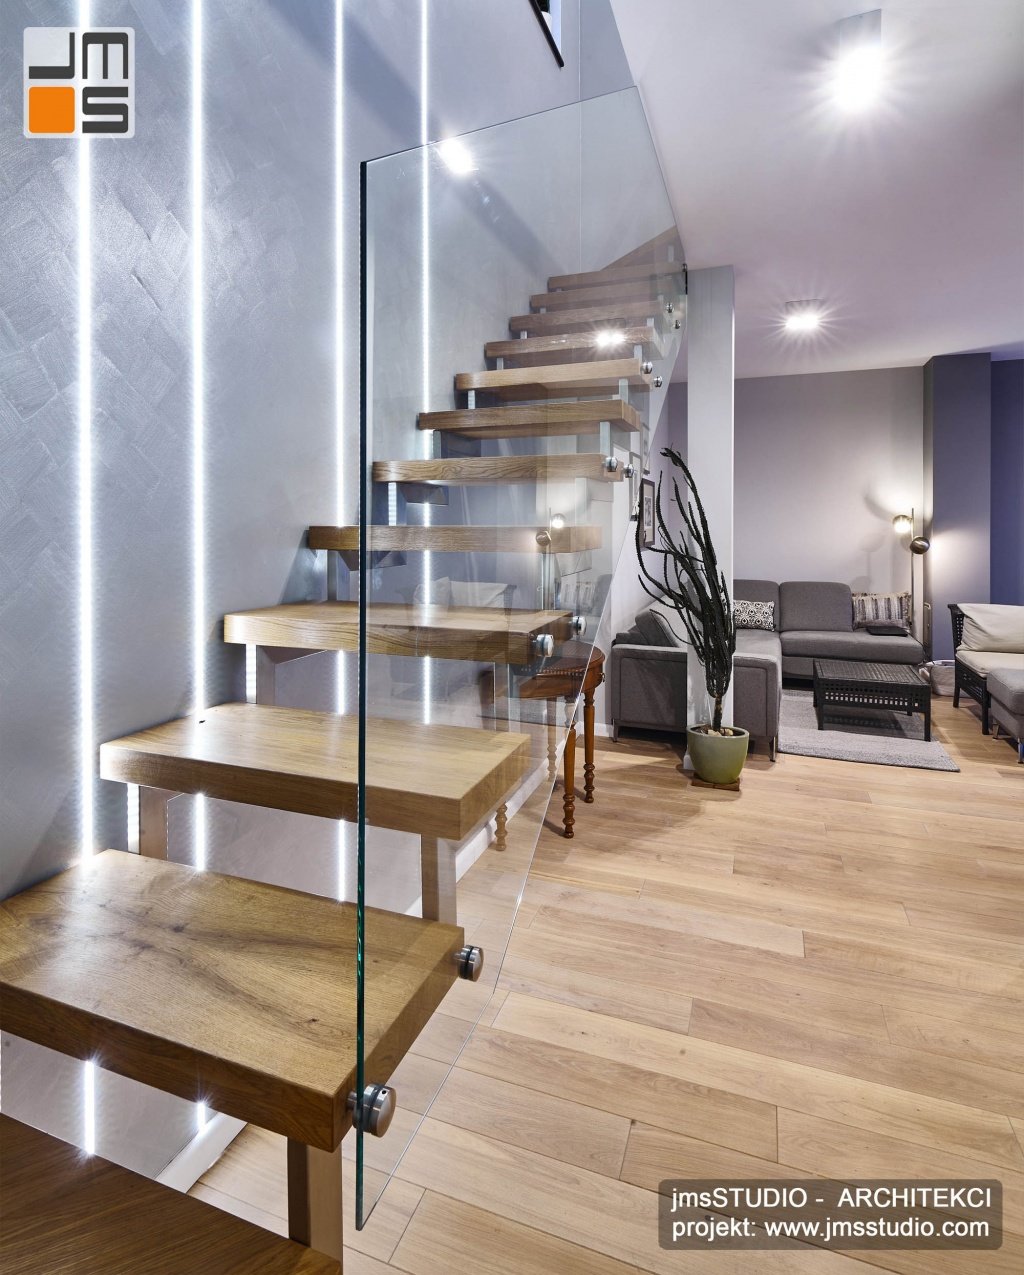 Drewniane stopnice na konstrukcji ze stali nierdzewnej to pomysł na eleganckie schody samonośne w projekt wnętrz domu  w Krakowie